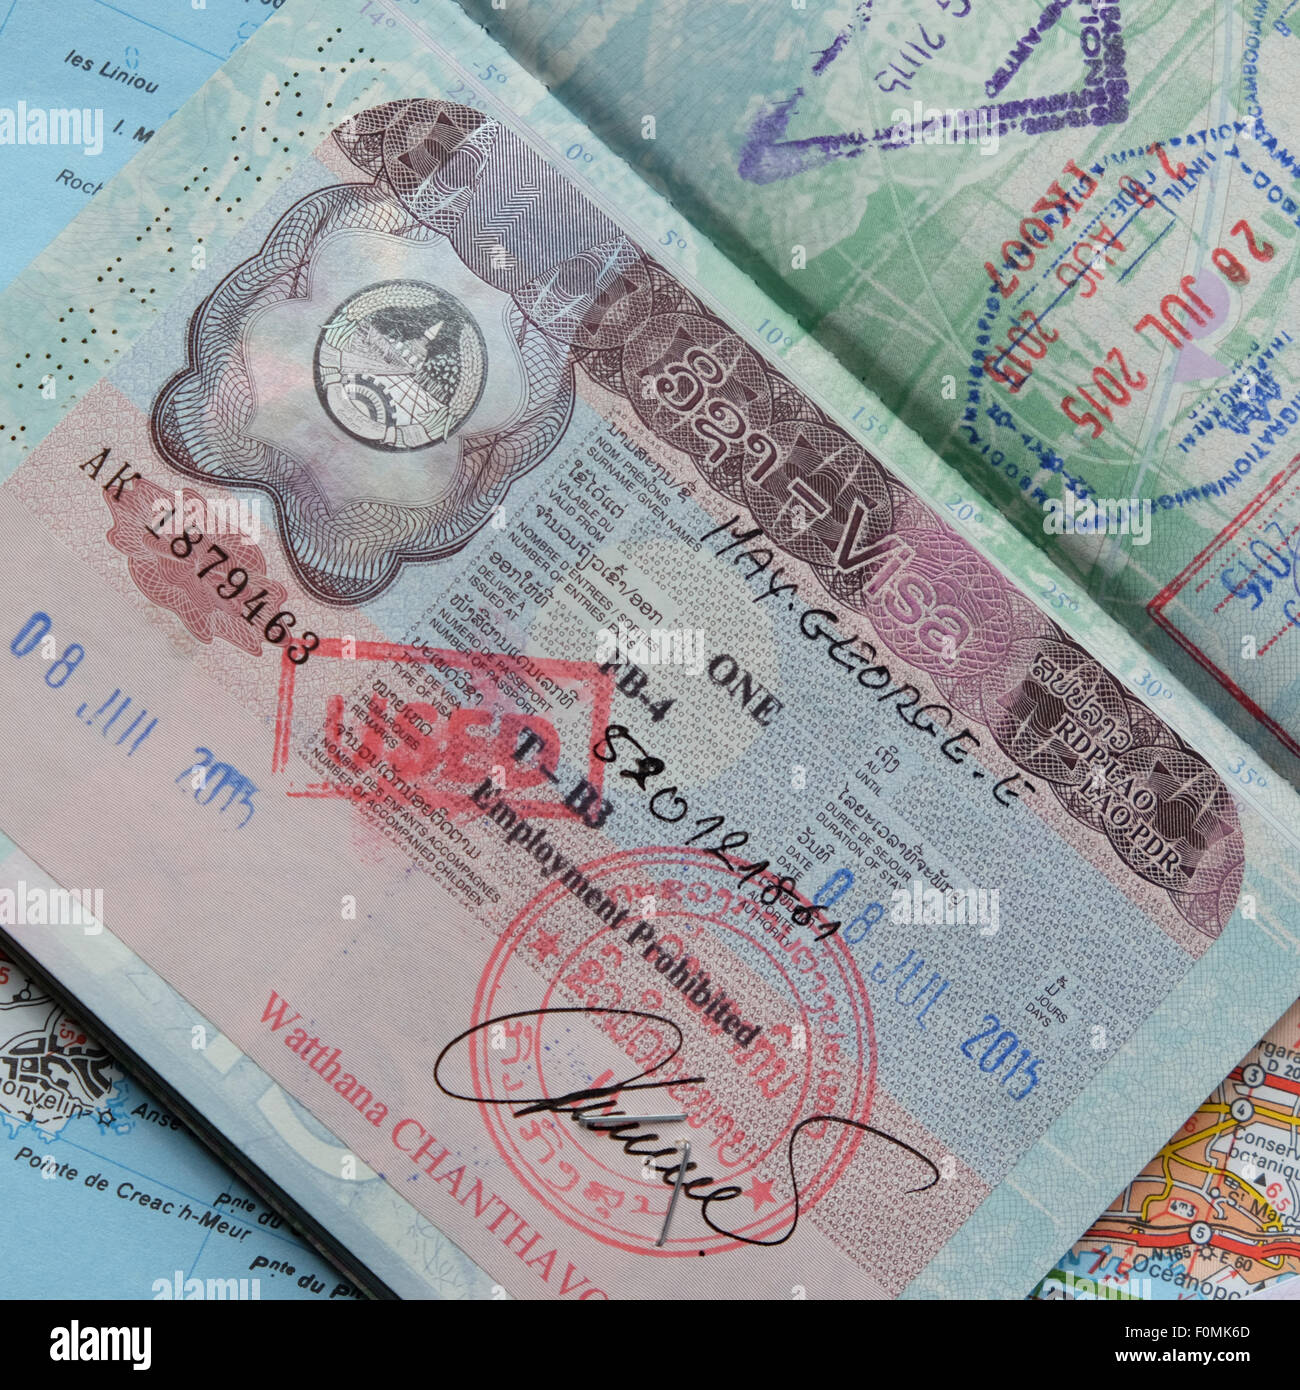 Voyage Passeport Visa pour le Laos Lao estampillé à l'intérieur d'un  passeport britannique Photo Stock - Alamy